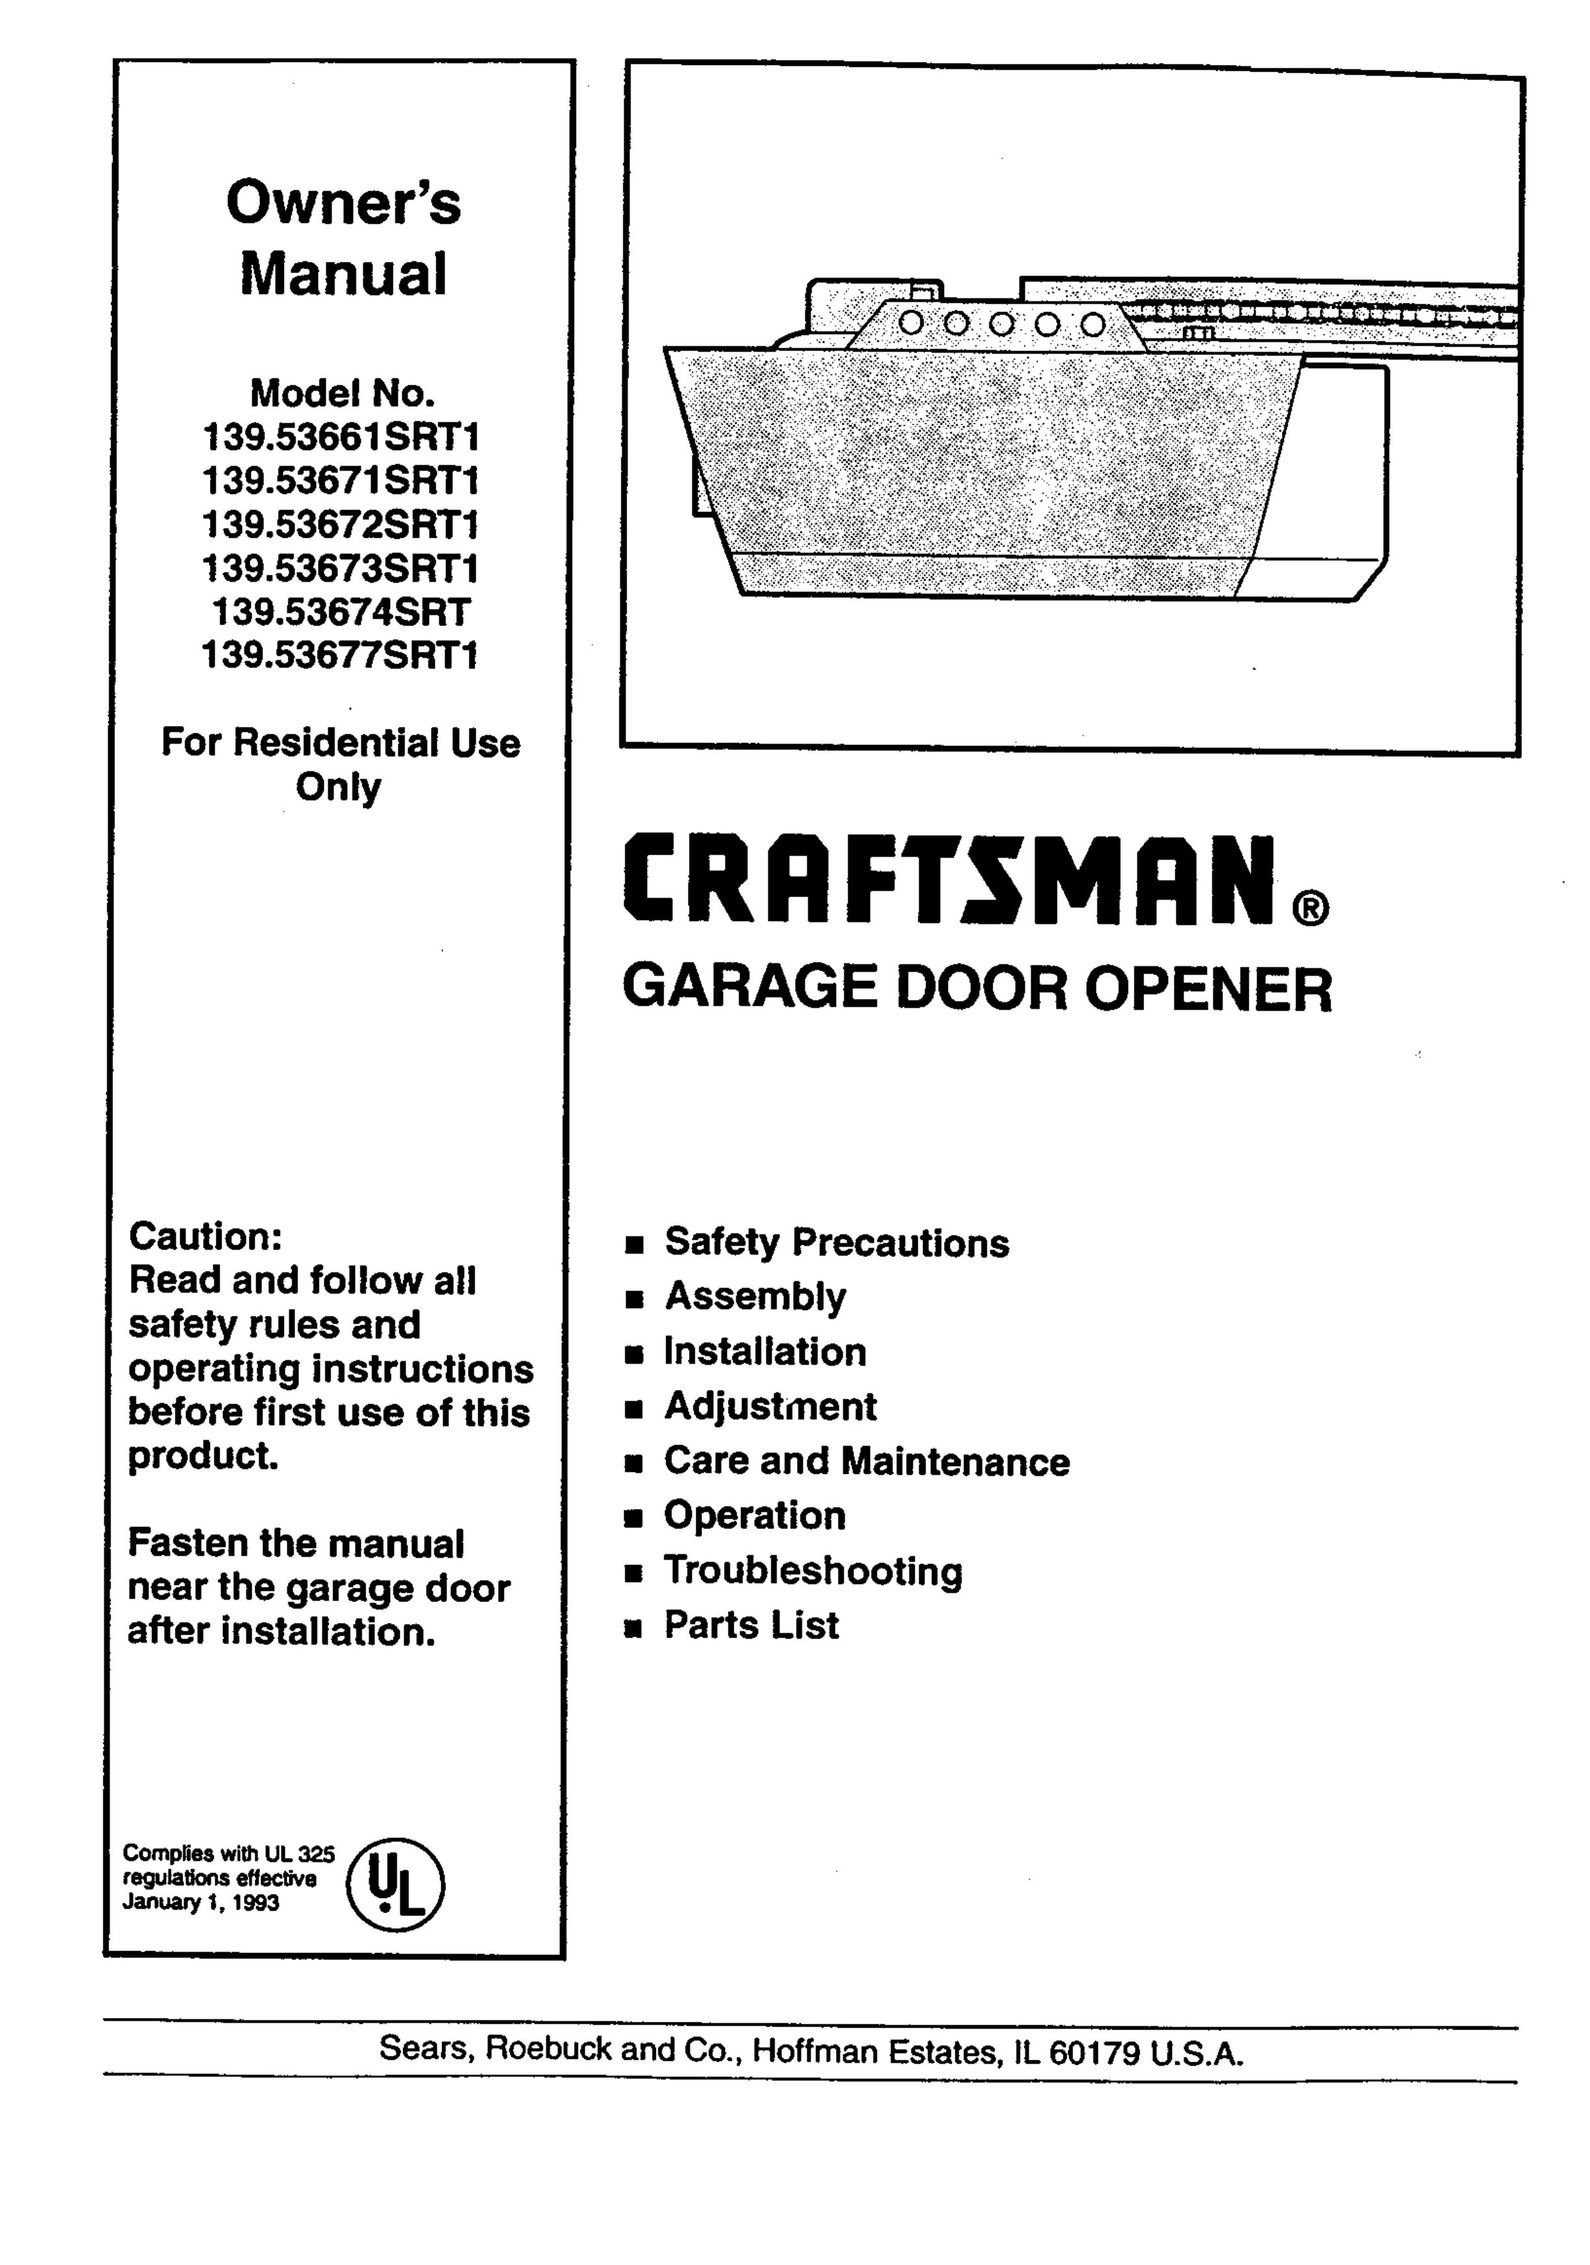 Craftsman 139.53677SRT1 Garage Door Opener User Manual